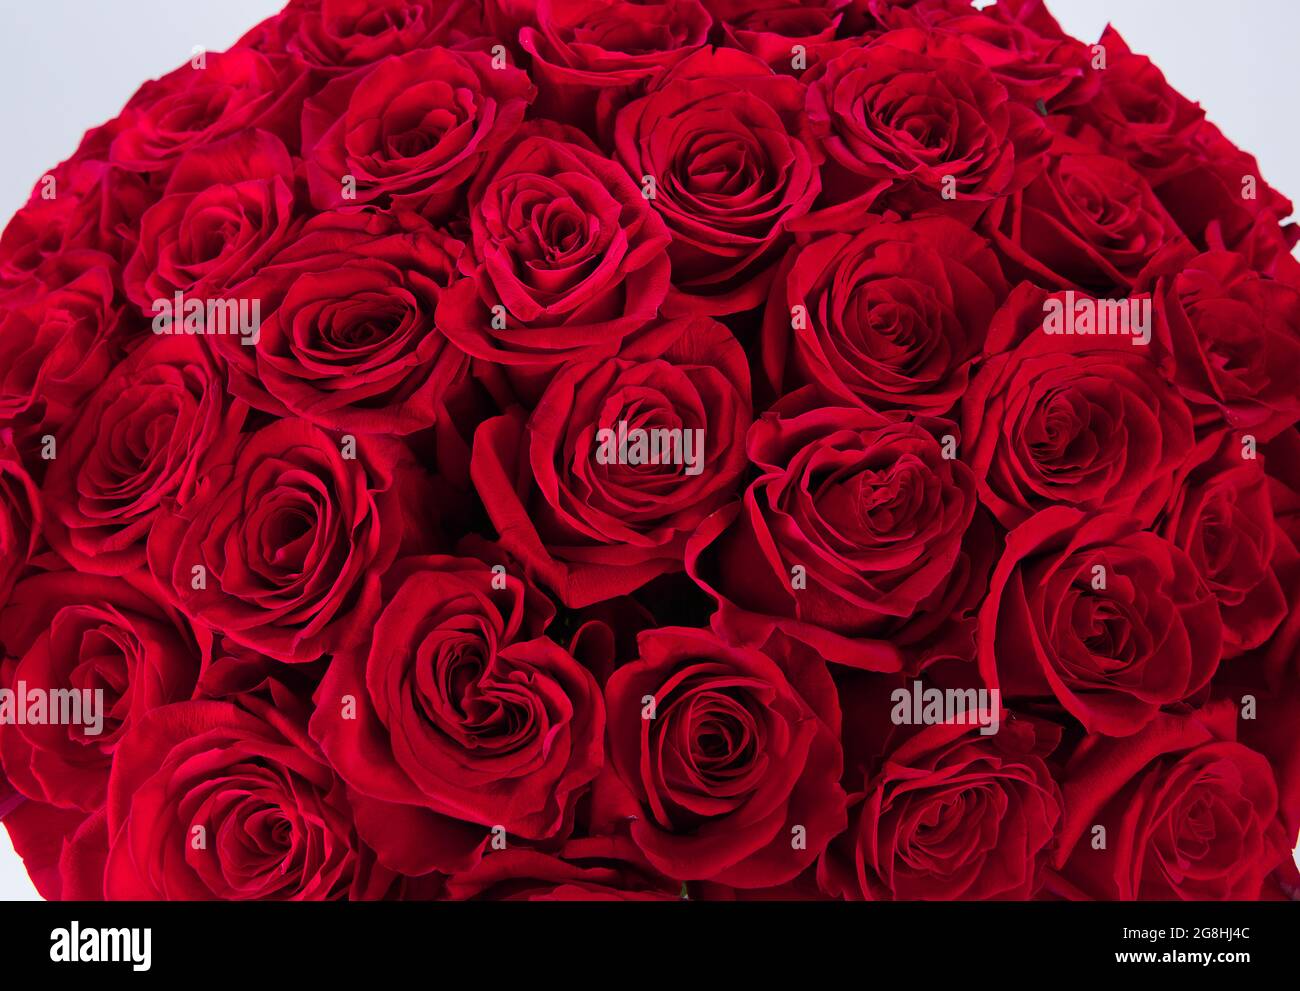 Énorme bouquet de roses rouges isolé sur fond blanc. bouquet de luxe d'une  centaine de roses rubis foncé pour le jour de la Saint Valentin.  Célébration de l'engagement ou nous Photo Stock -